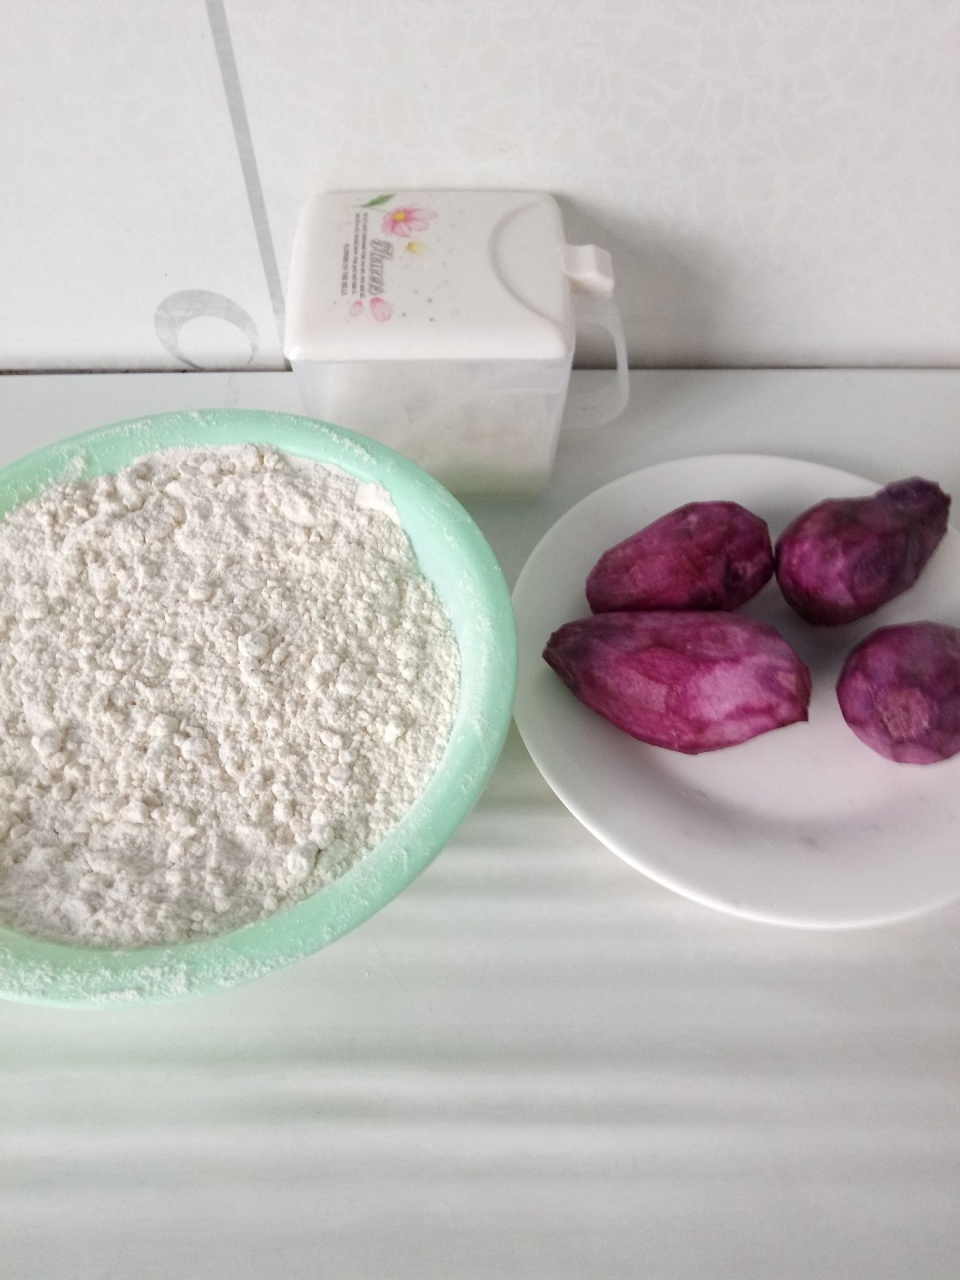 食材:紫薯,面粉,白砂糖,植物油